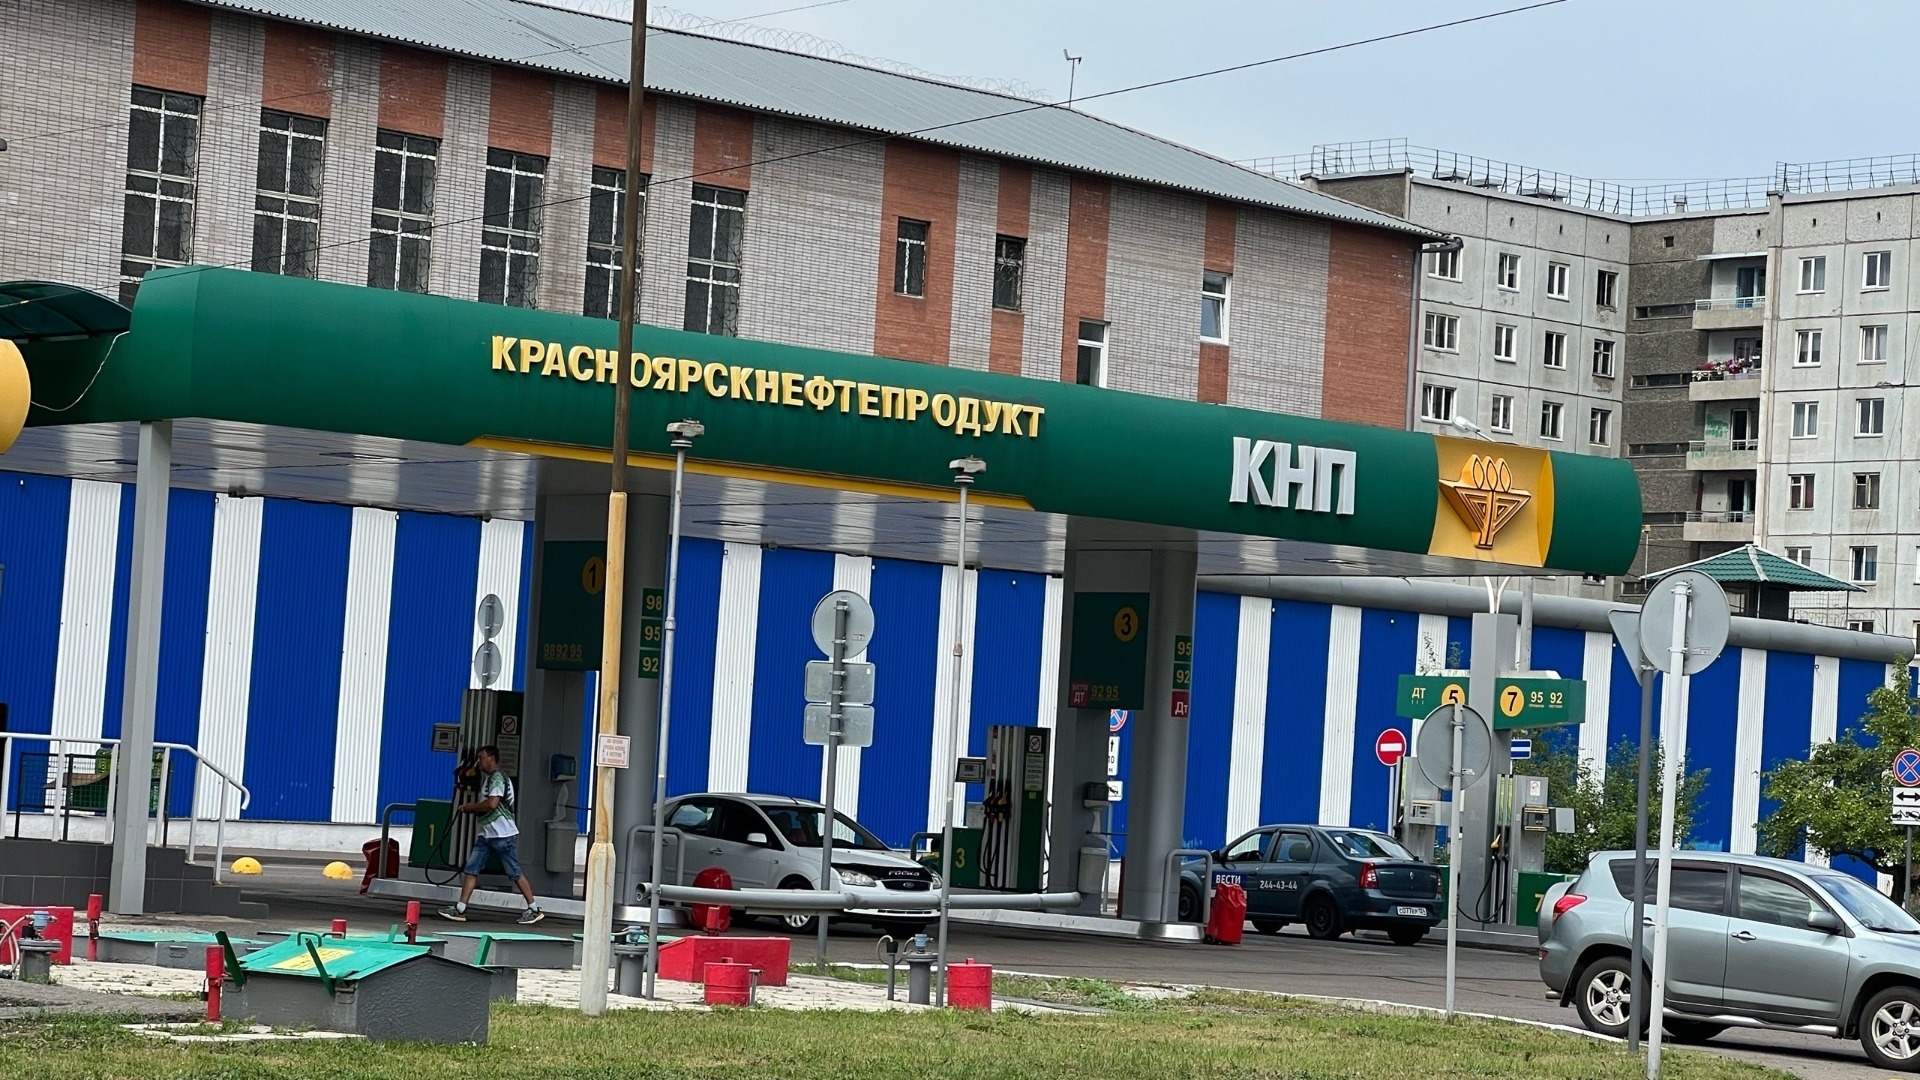 Пять заправок под Красноярском незаконно используют вывески КНП